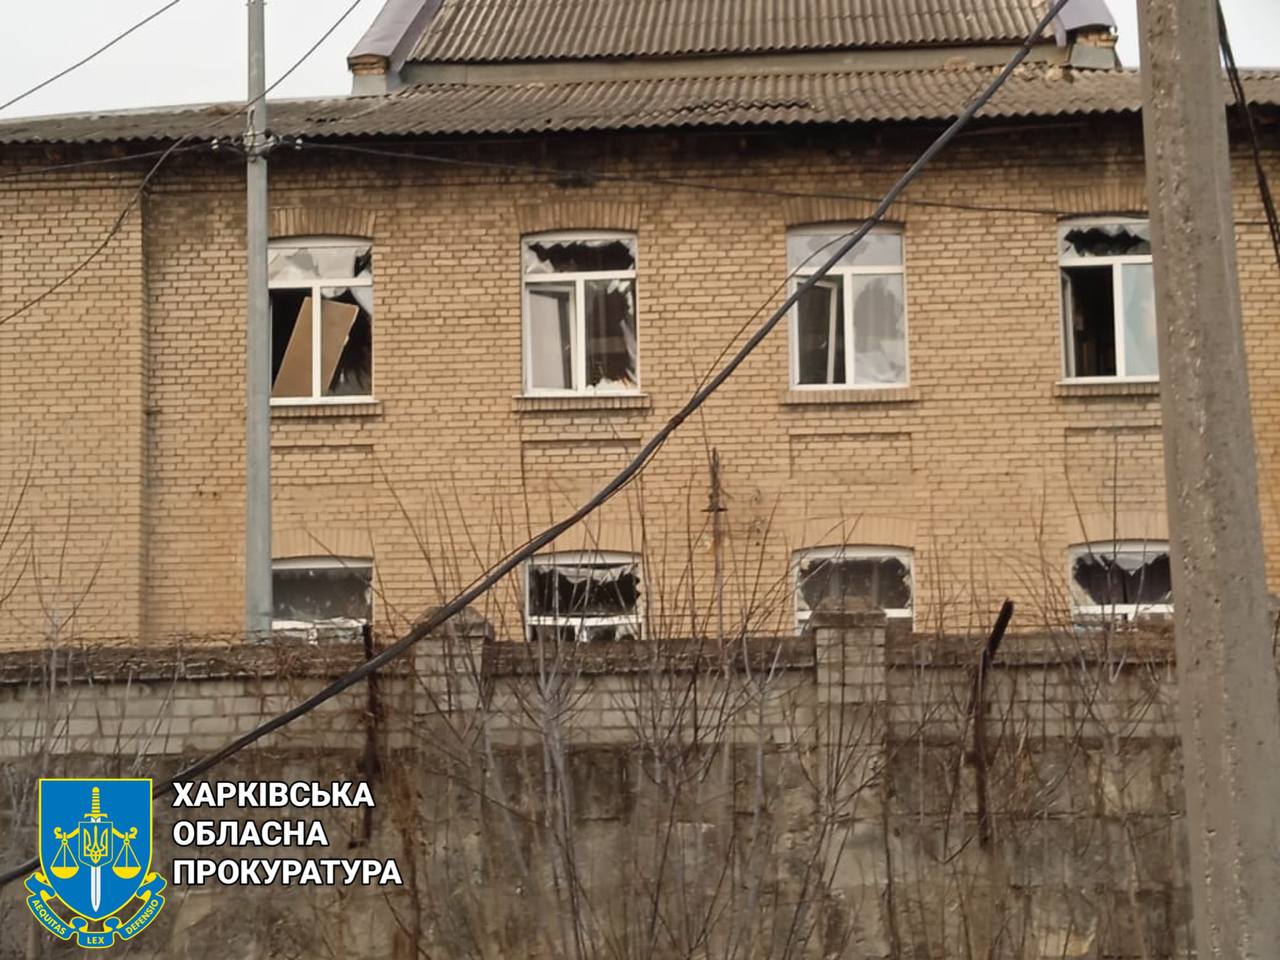 Вероятно, били наугад — Синегубов прокомментировал ракетный удар по Харькову